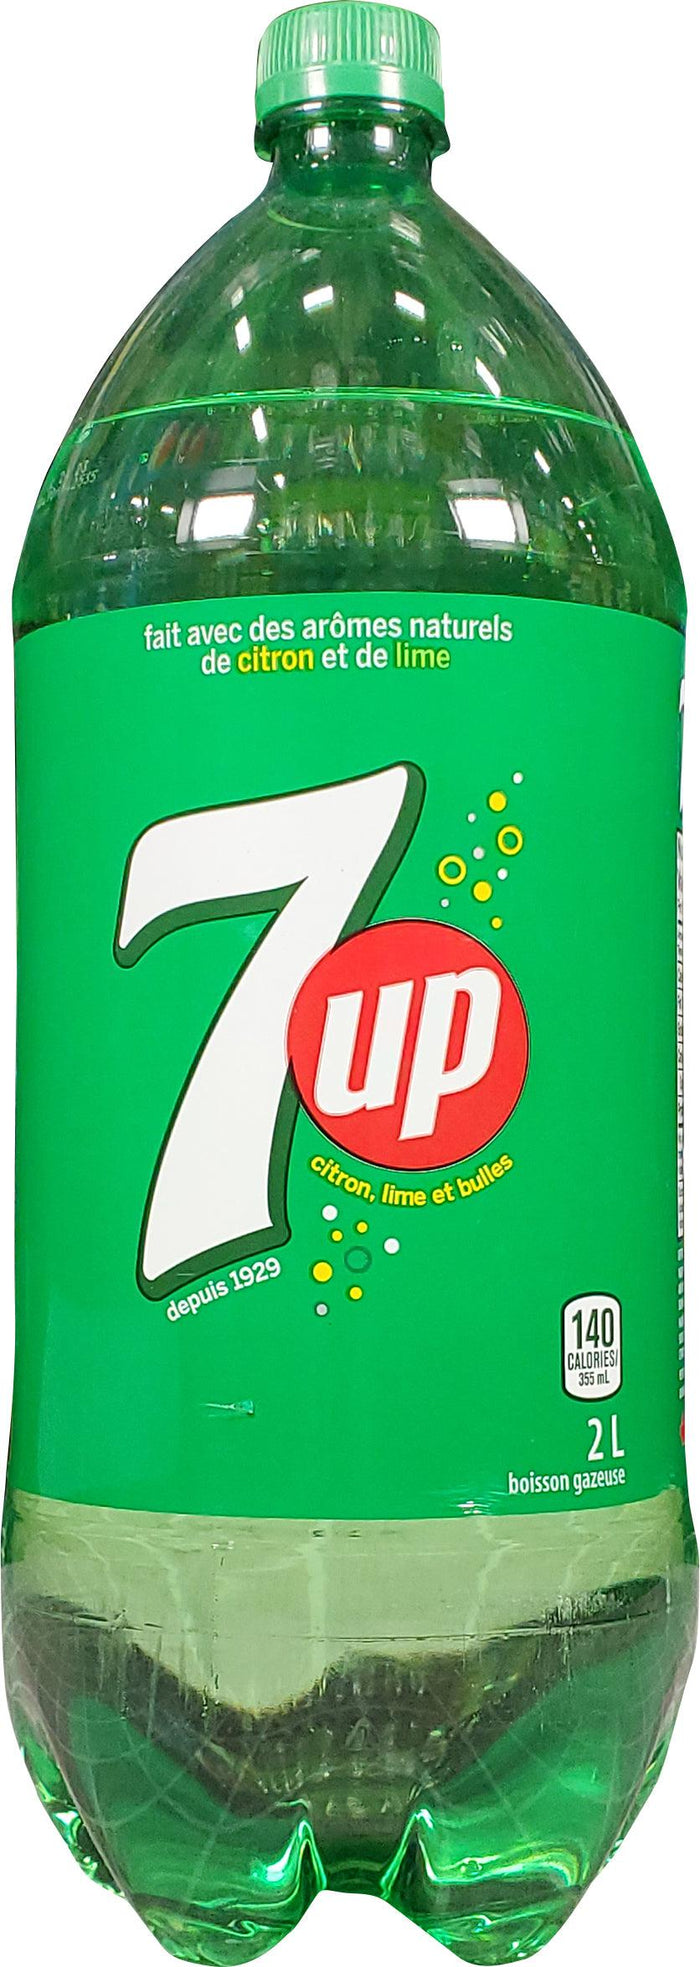 7up - PET